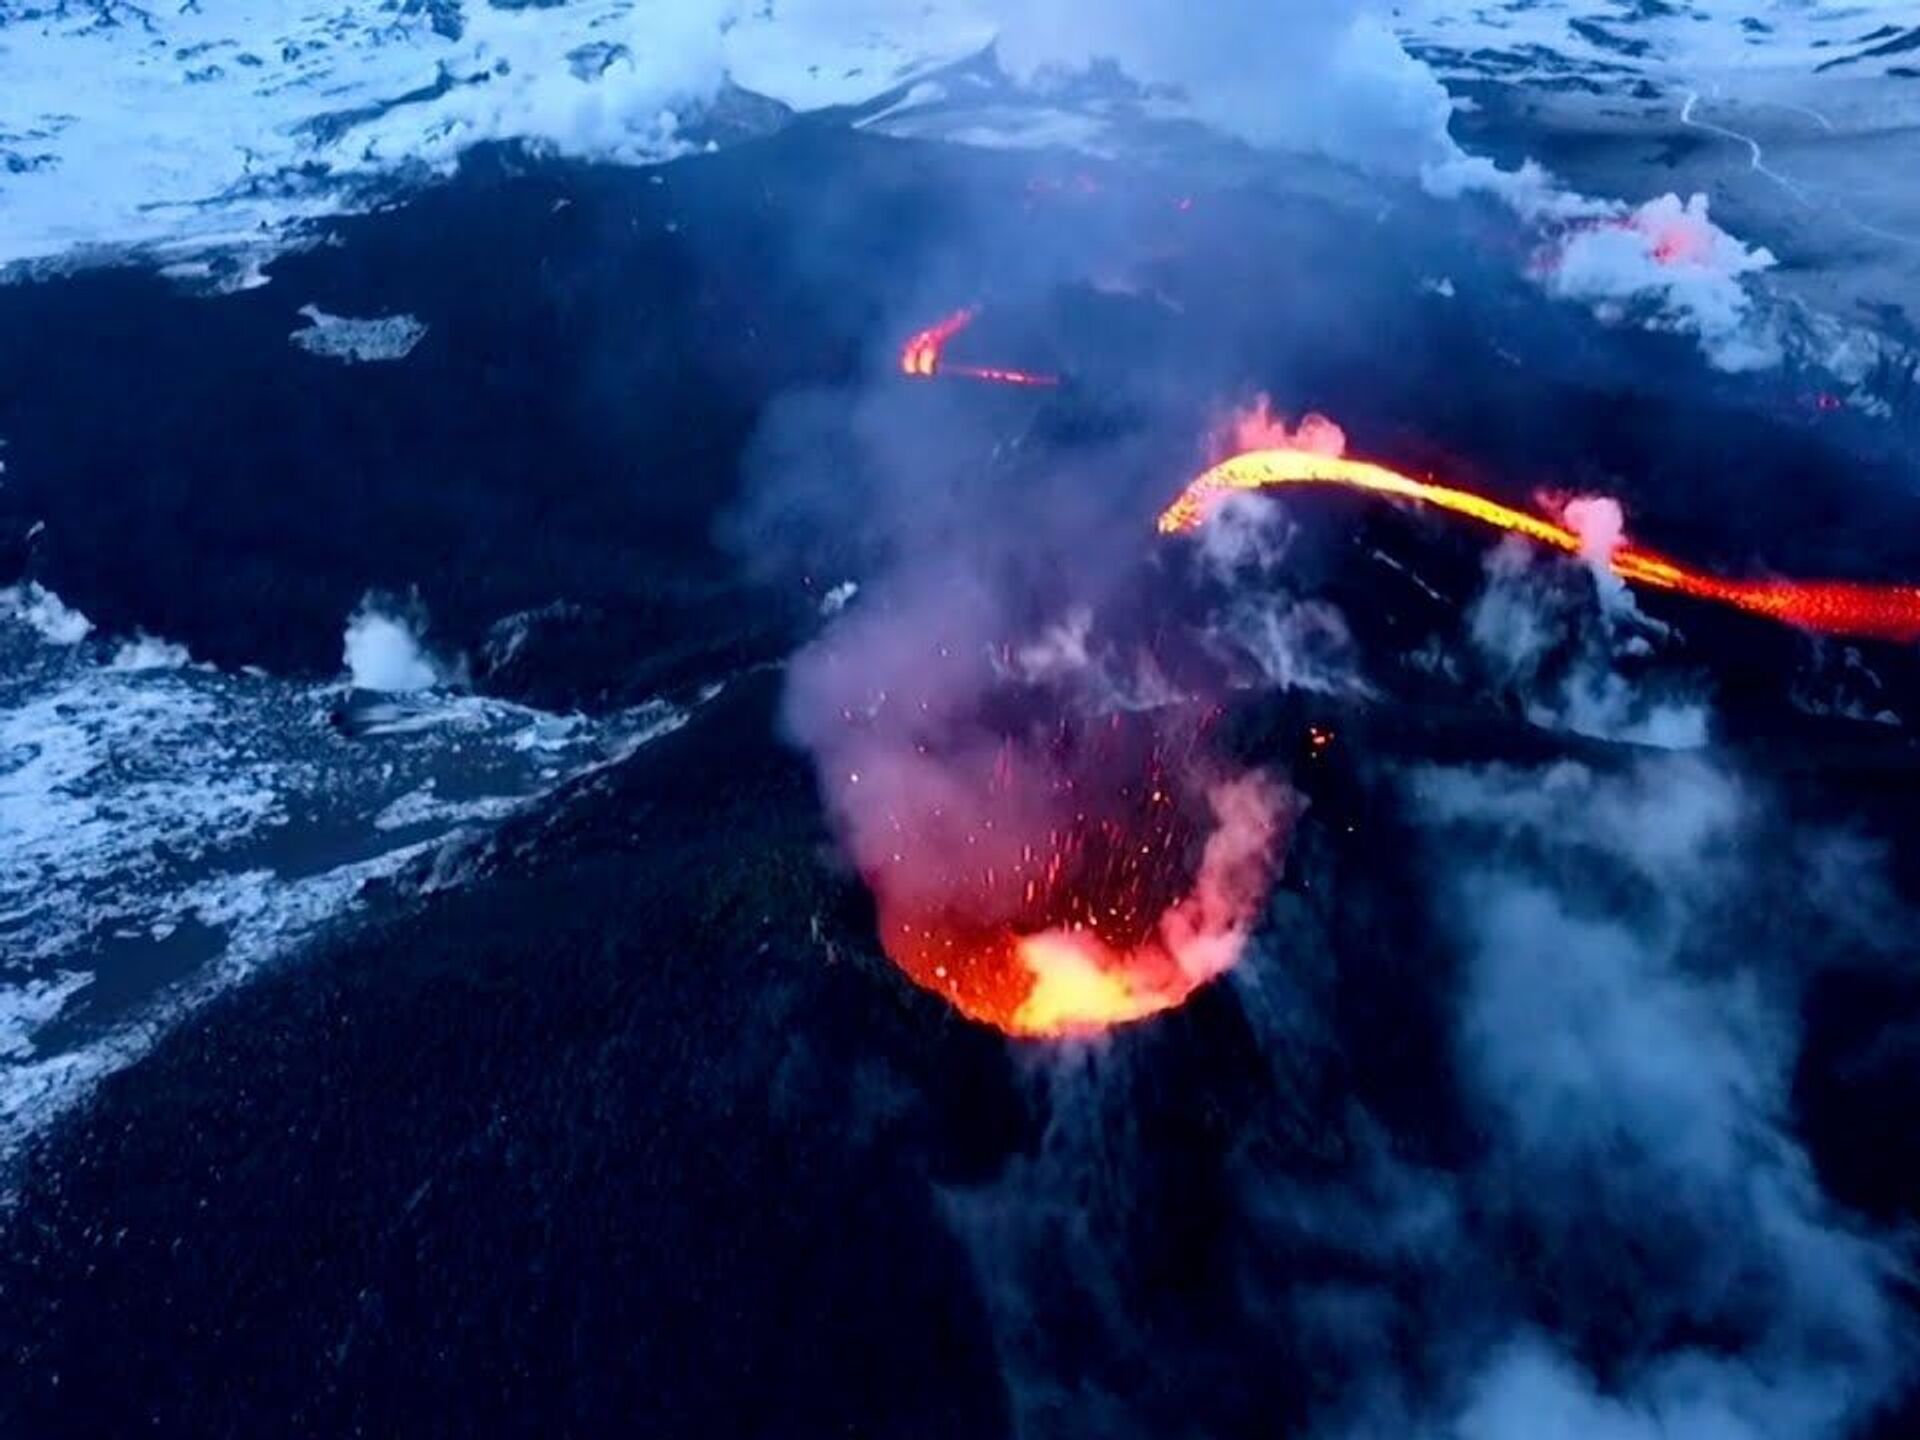 Извержение вулкана Тонга